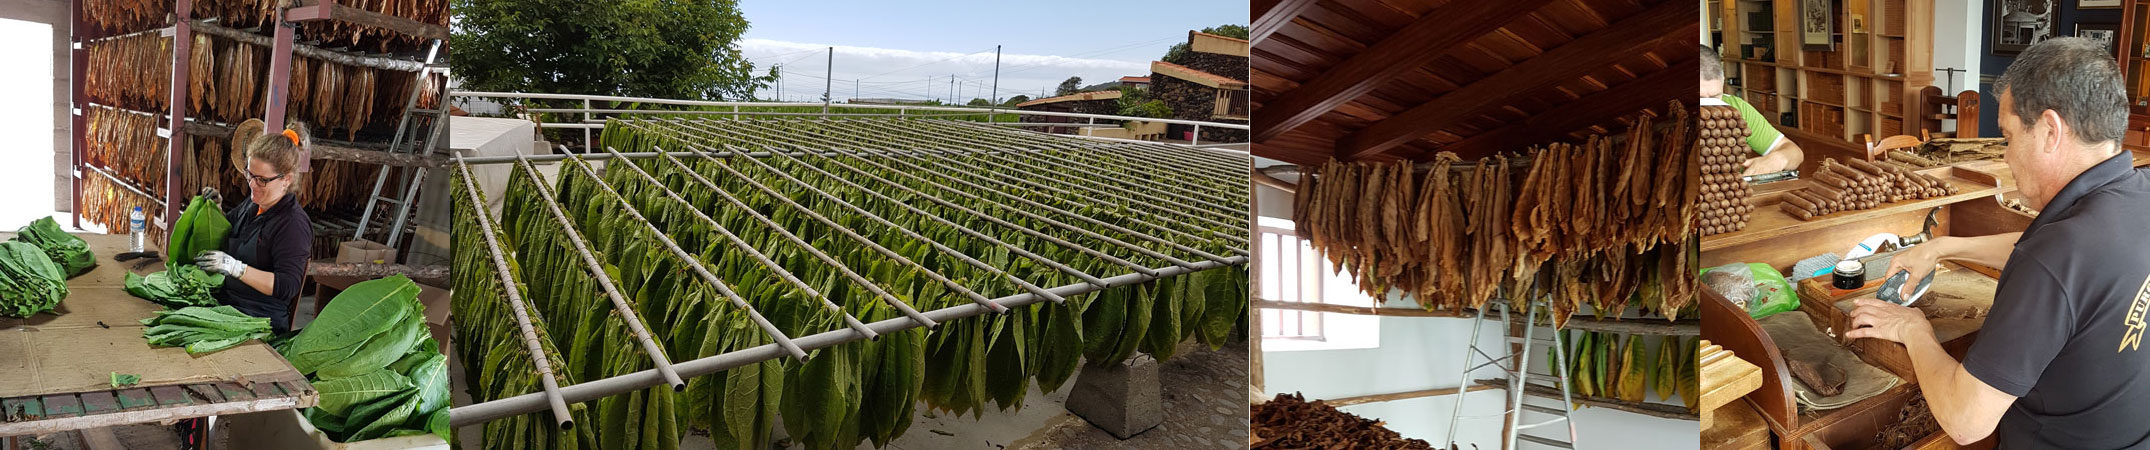 In der Finca El Sitio werden Zigarren vollständig aus Tabak von La Palma hergestellt